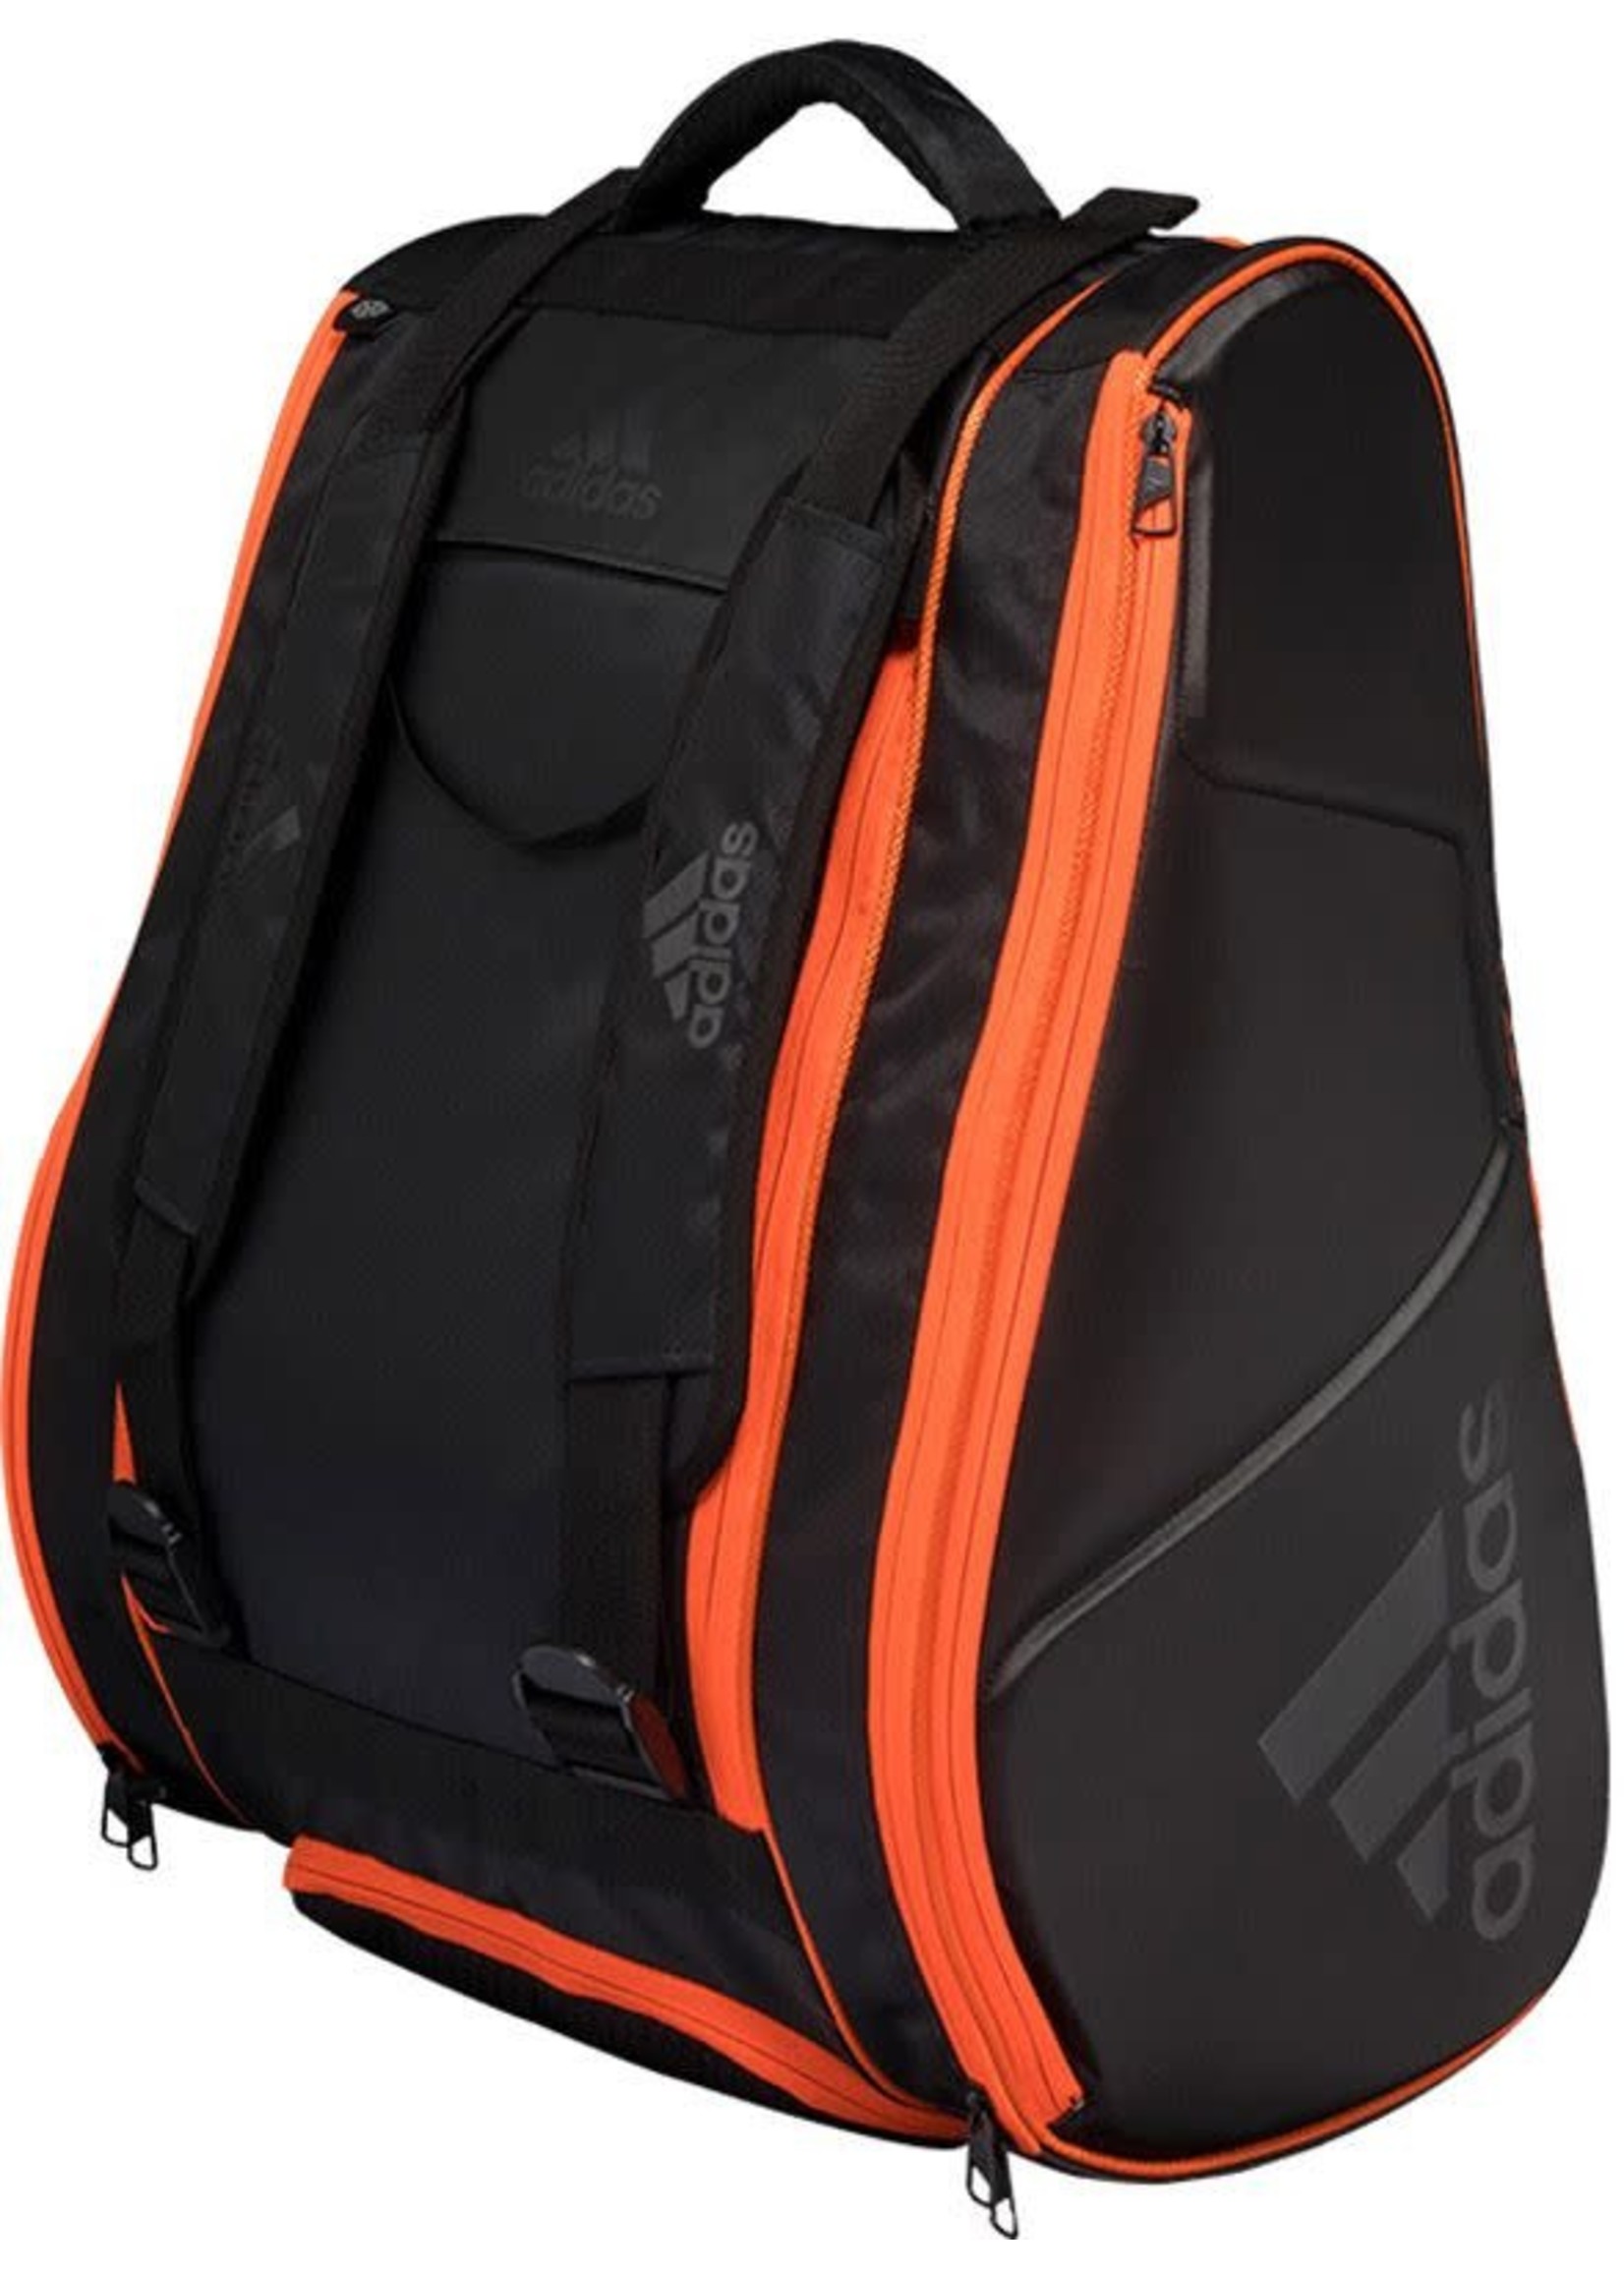 Adidas Racketbag Protour - Orange